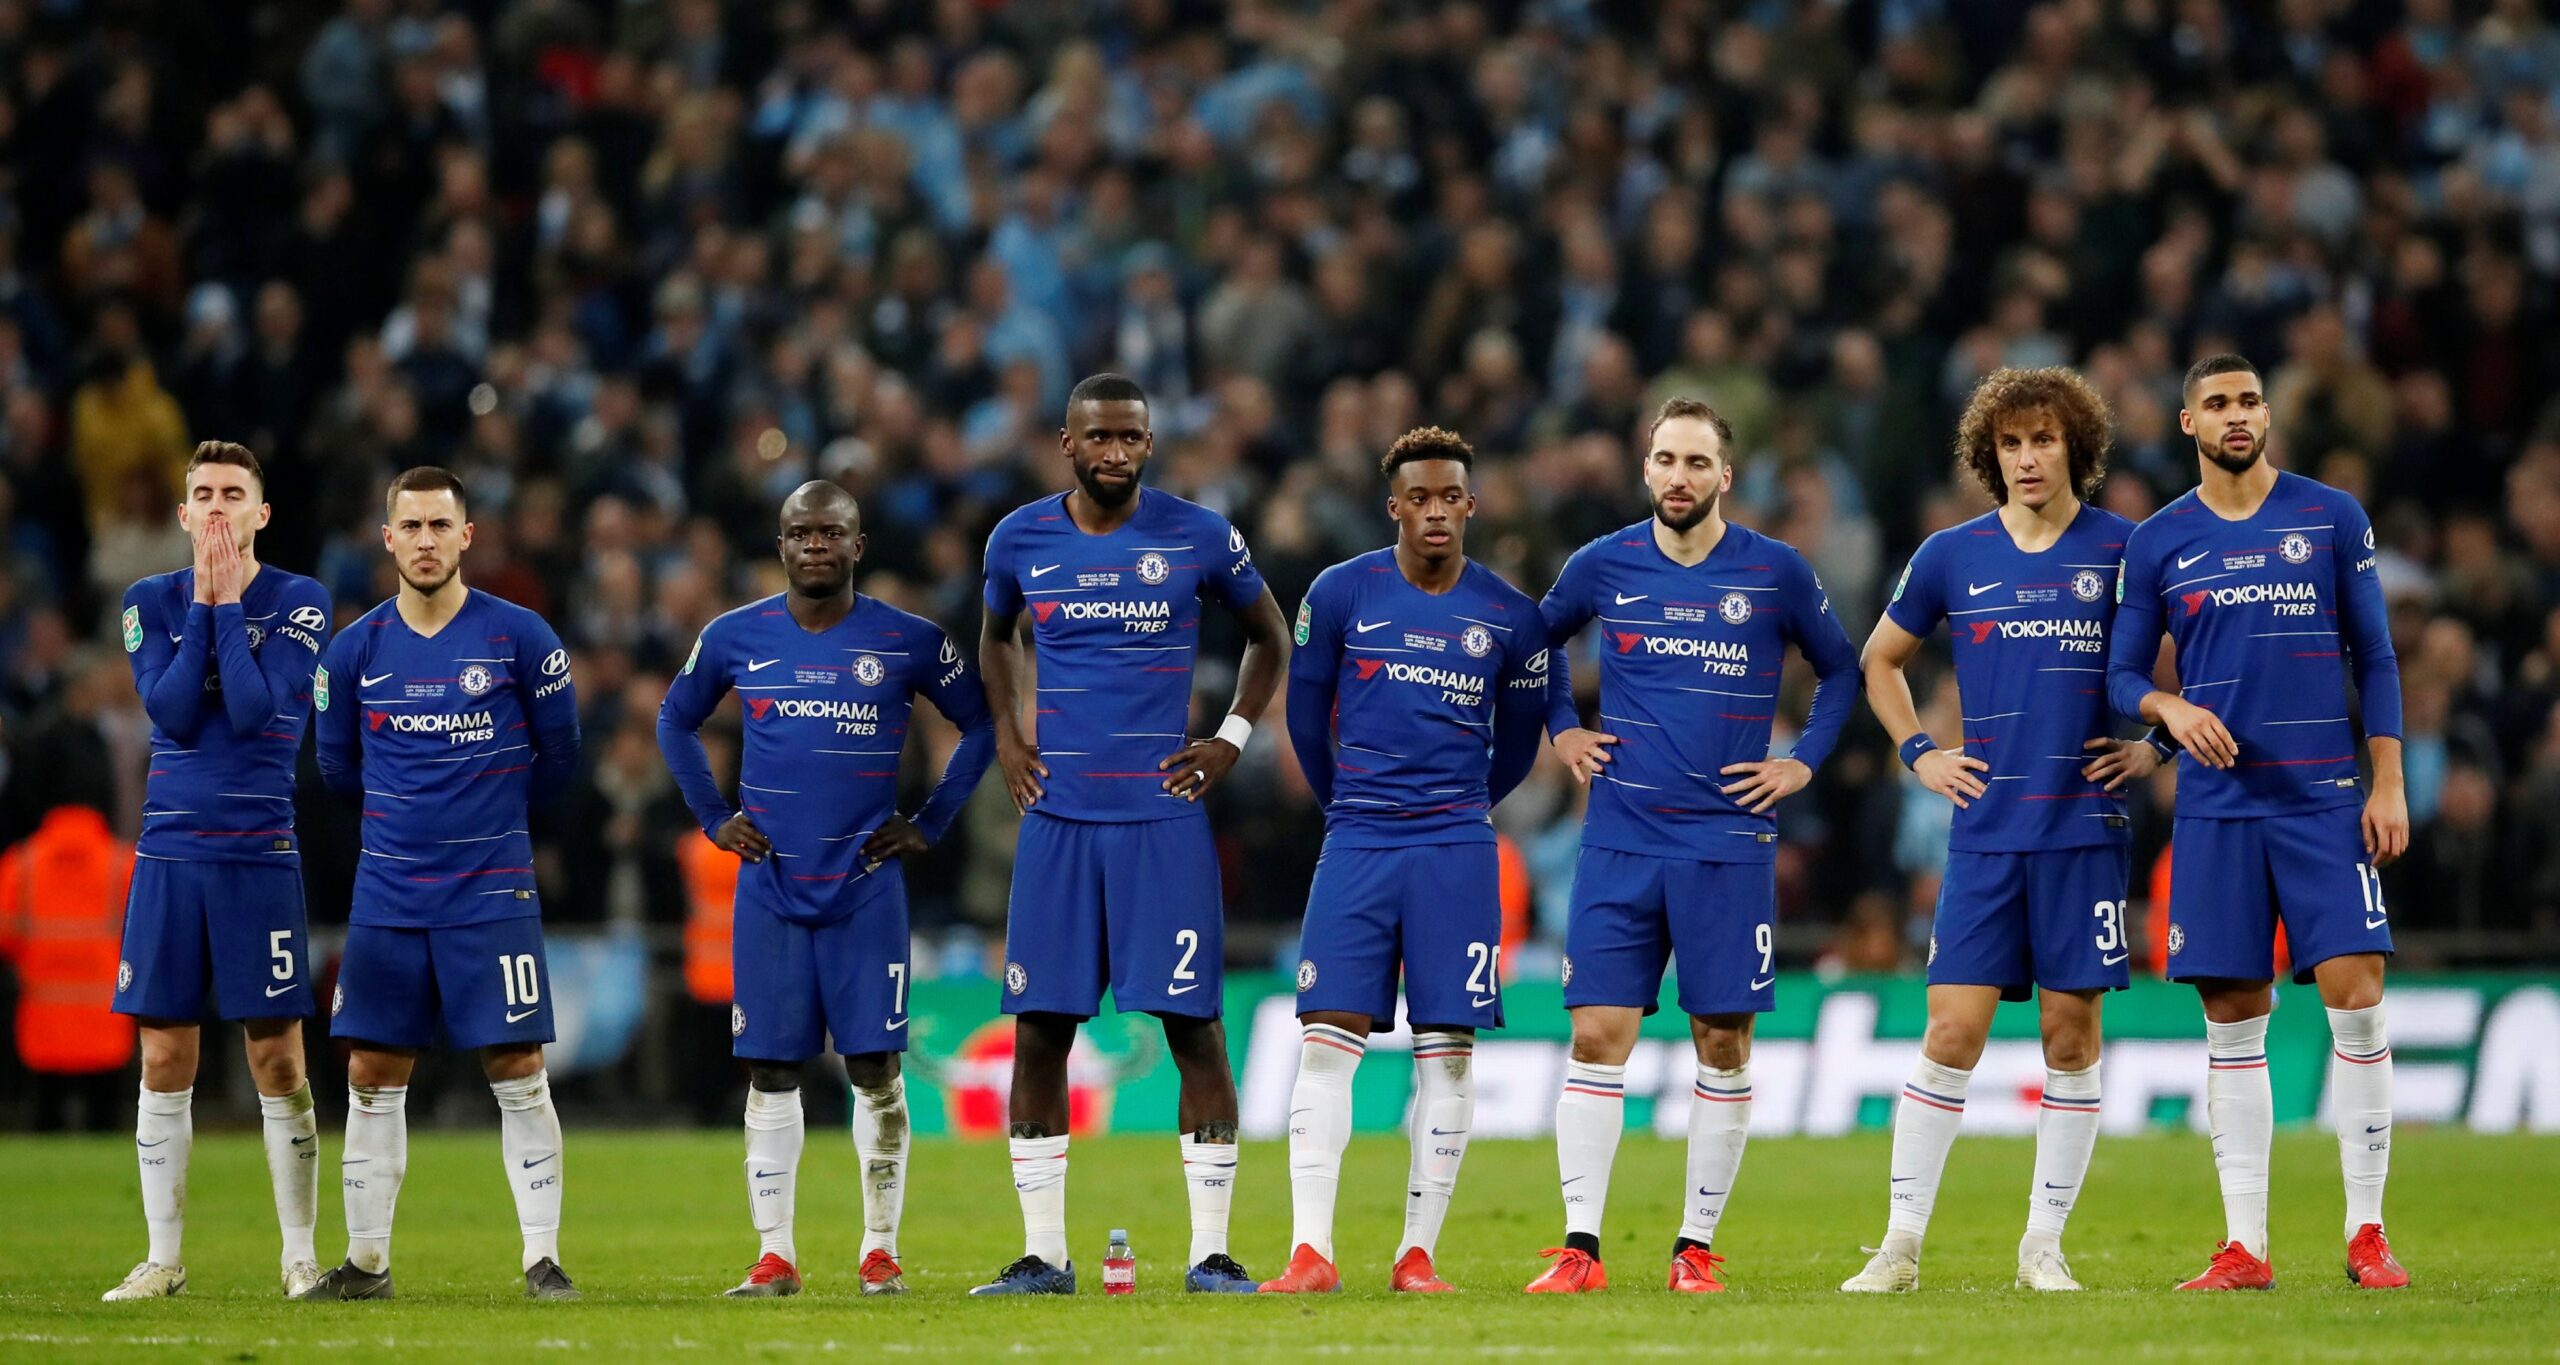 Tendance: Man City affrontera Chelsea en finale de la Ligue des champions